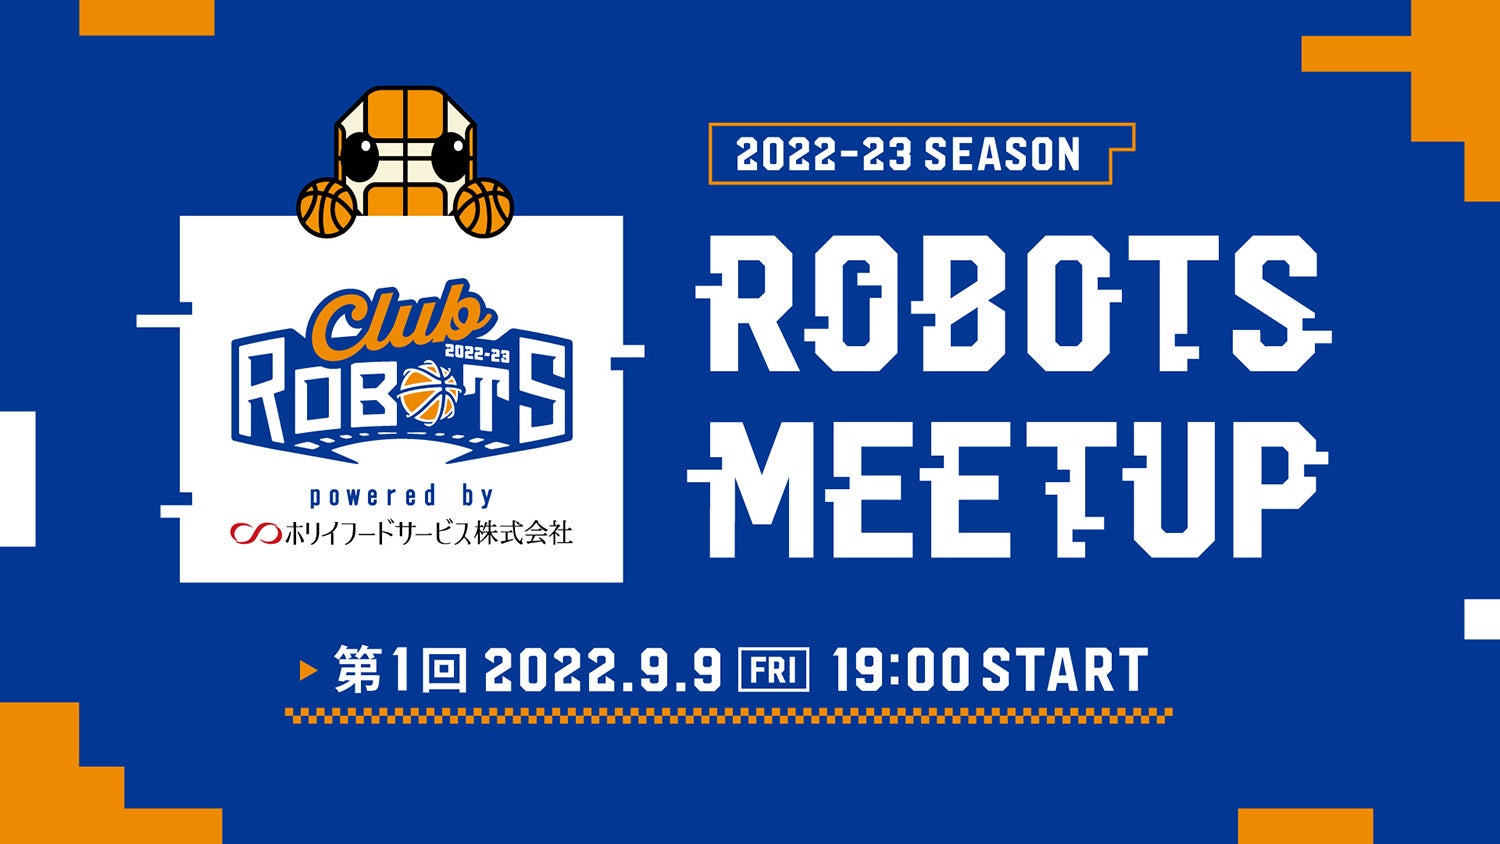 ROBOTS MEET UP